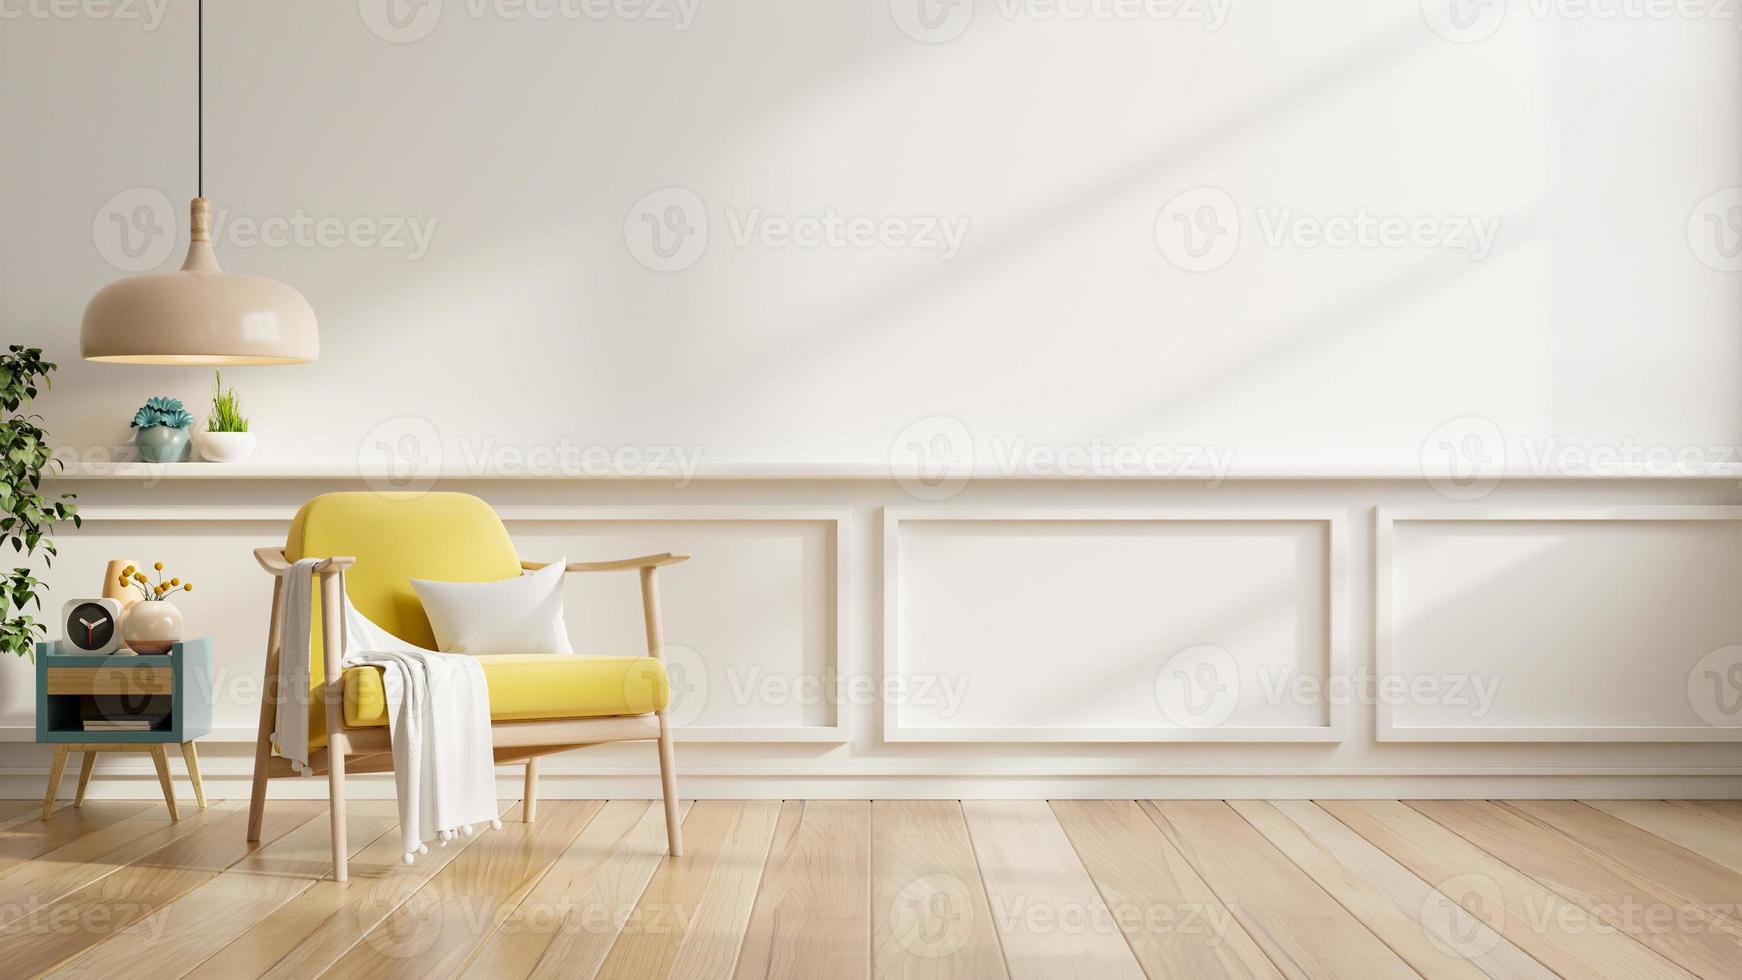 wit kleur muur bespotten omhoog in warm tonen met geel fauteuil en decoratie minimaal. 3d illustratie renderen foto